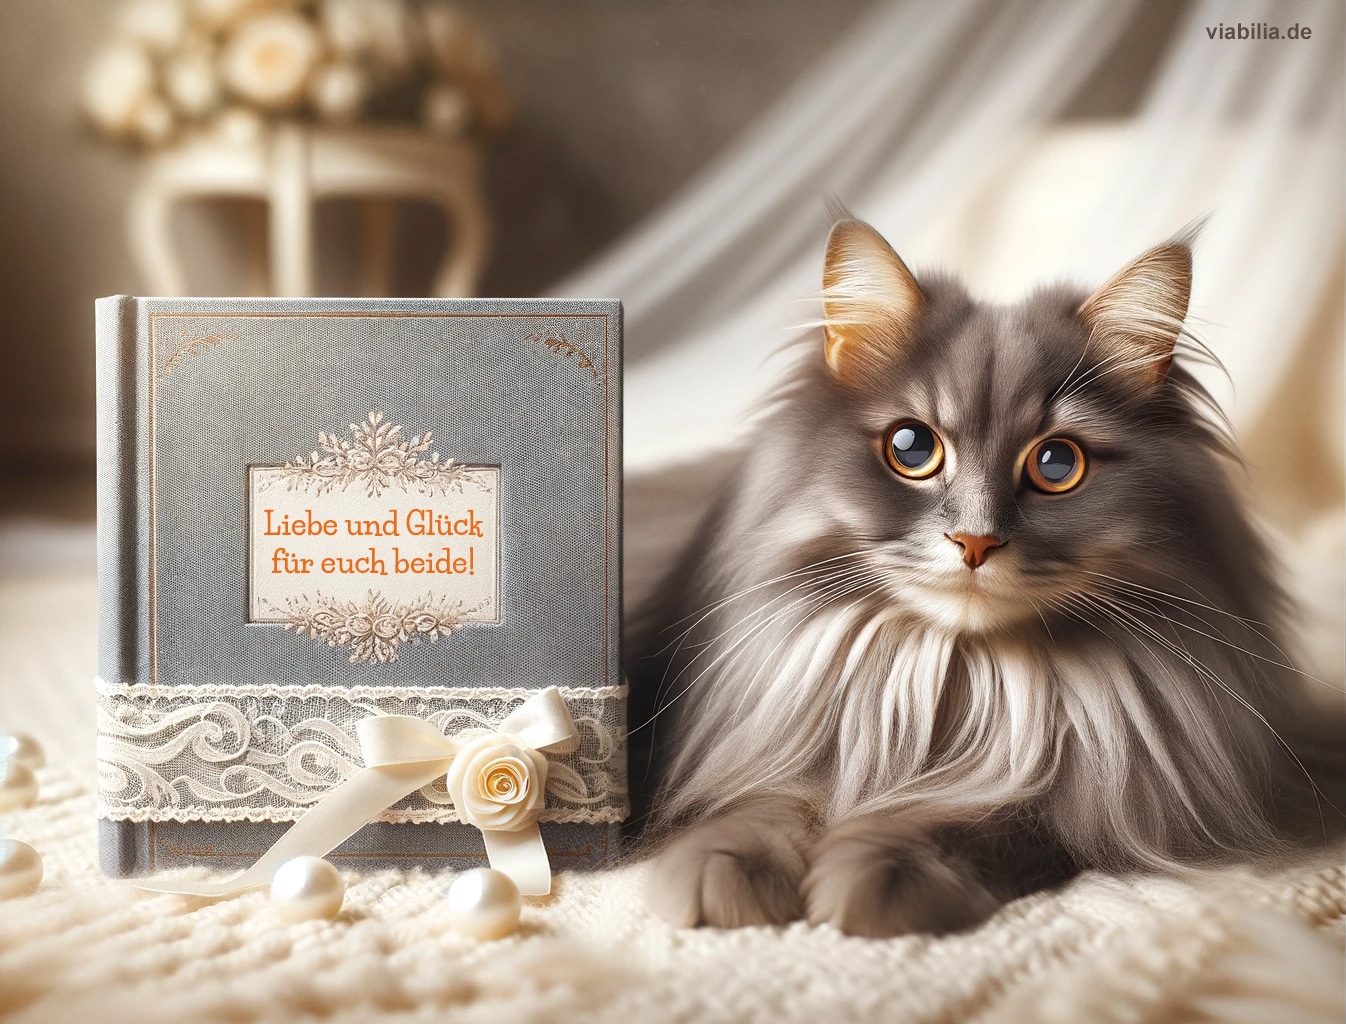 Hochzeitswünsche, hier mit Katze und Hochzeitsbuch